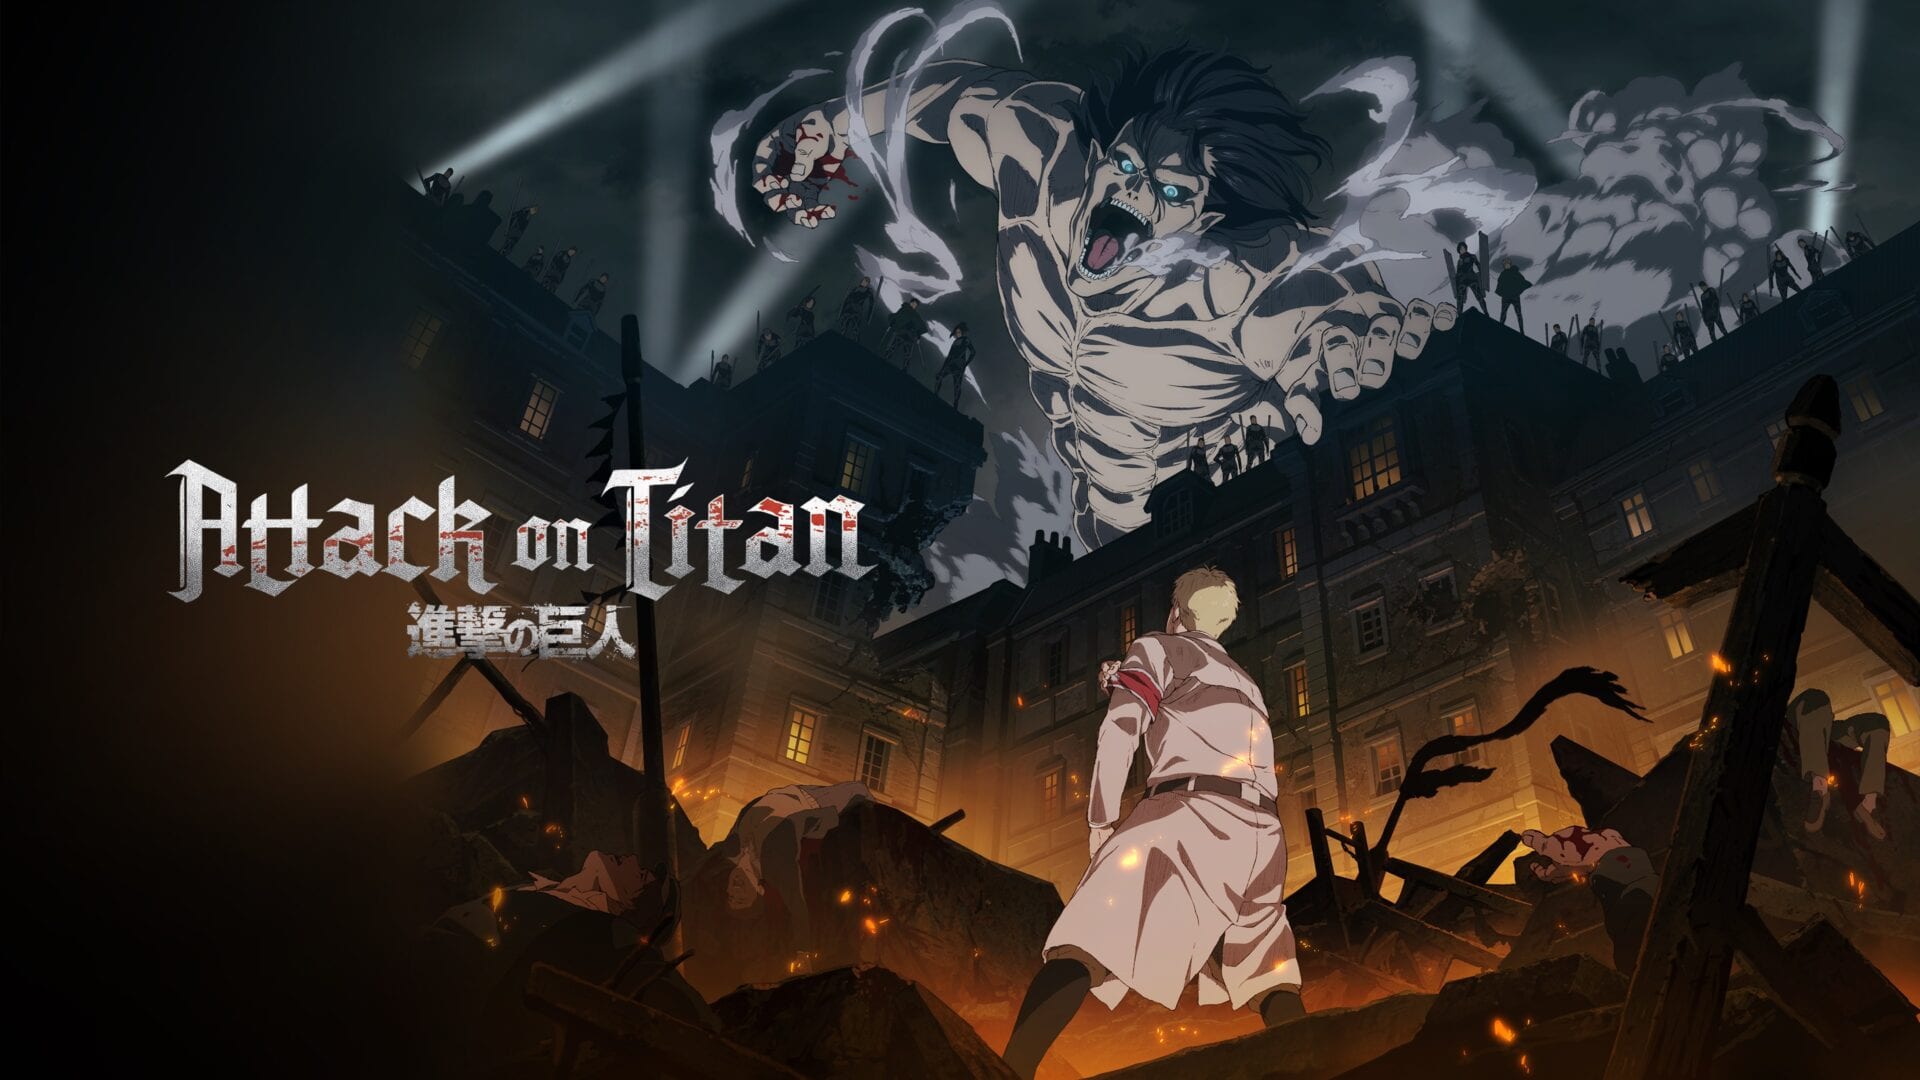 Attack on Titan Final Season Part 2 estrena nuevo trailer y fecha de estreno 